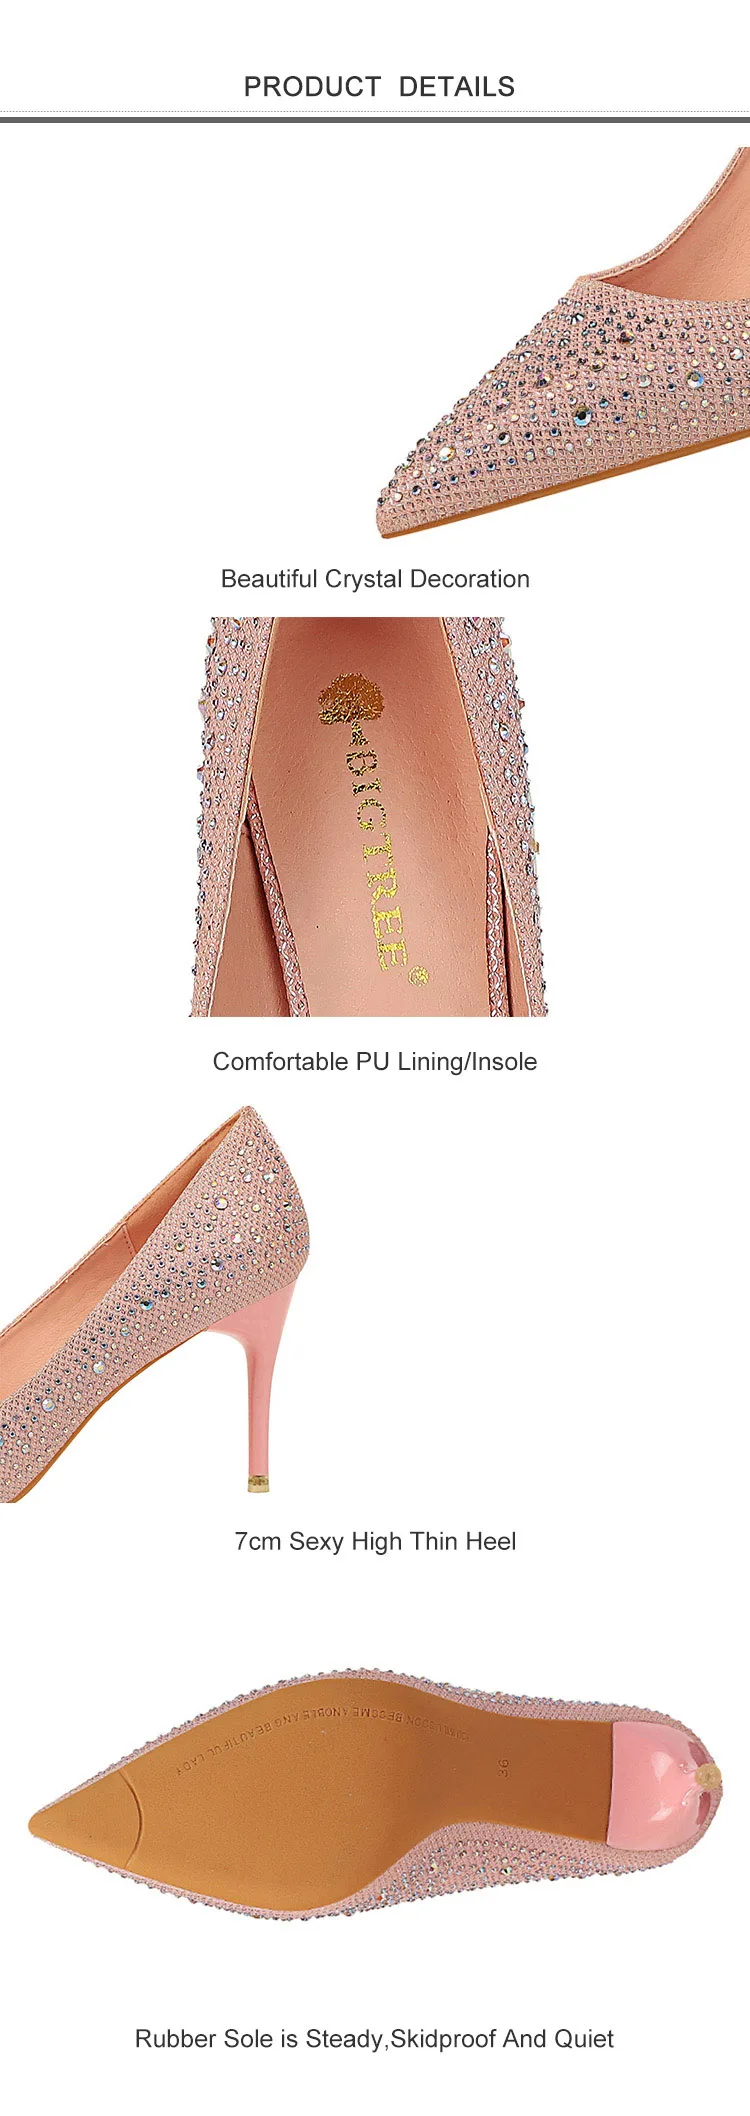 Г. Новые Демисезонные женские туфли-лодочки женские свадебные туфли на высоком тонком каблуке, с острым носком, украшенные кристаллами пикантные женские туфли на высоком каблуке, цвета шампанского